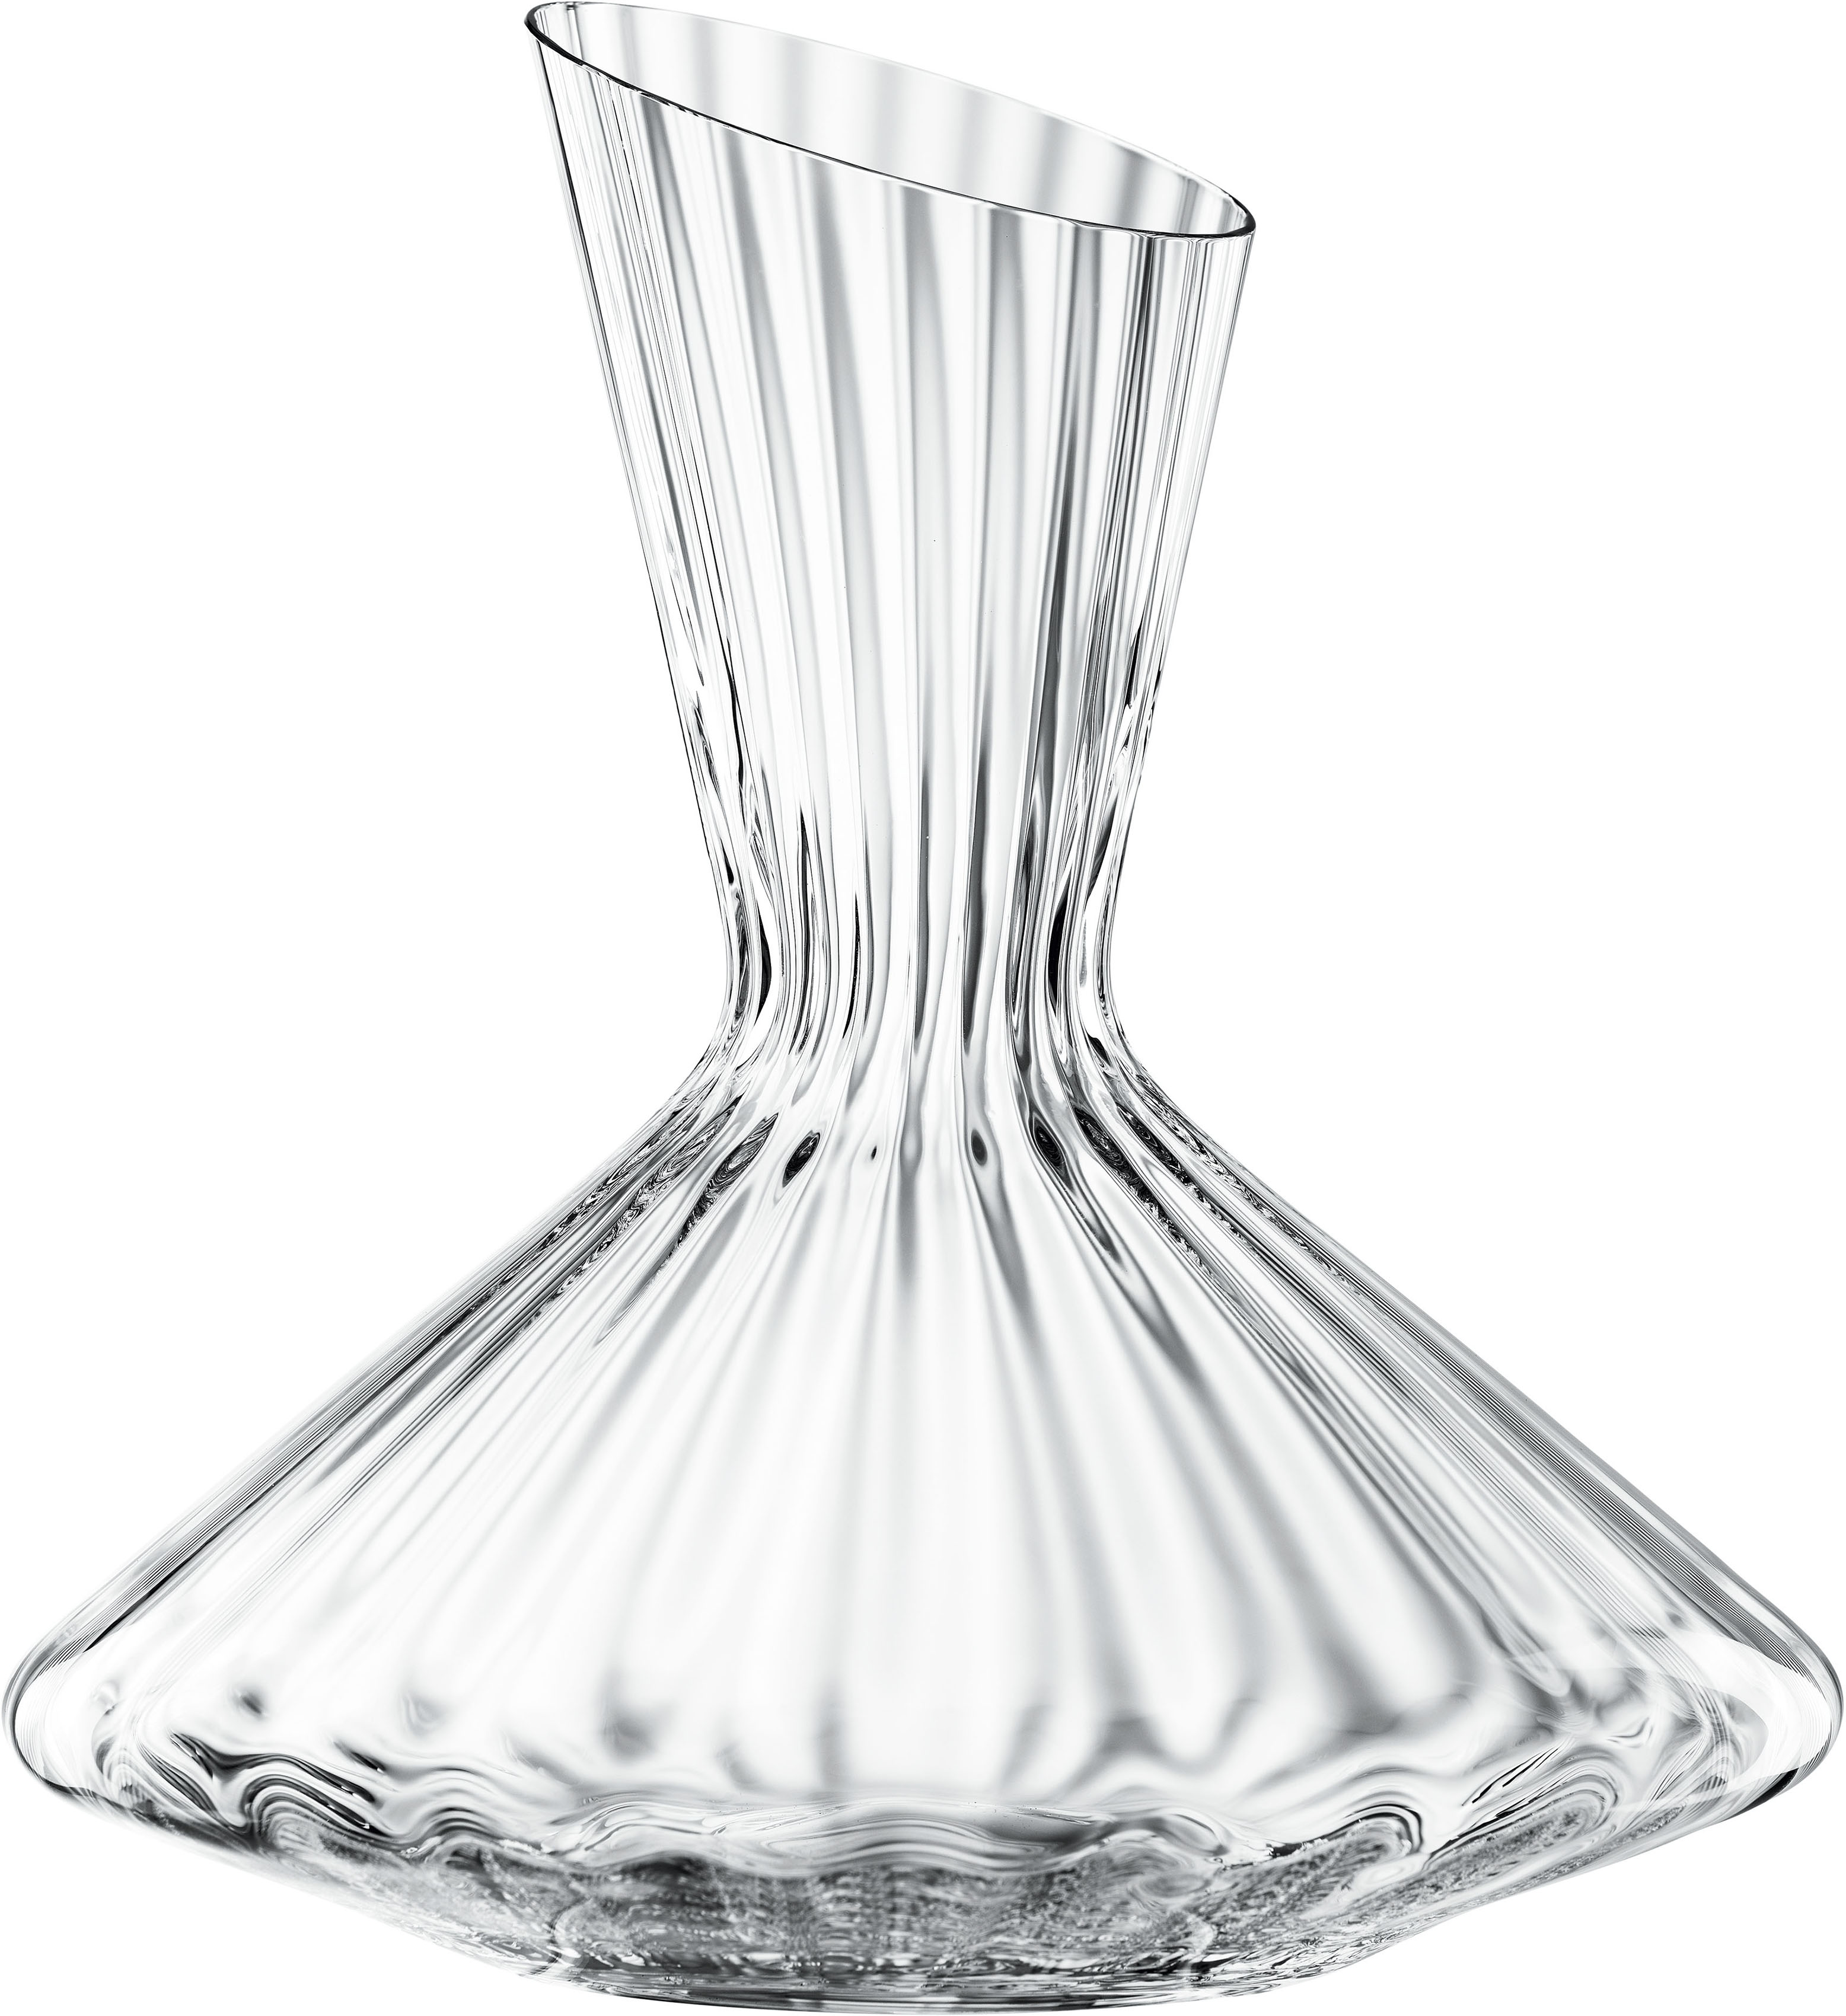 SPIEGELAU Karaffe Lifestyle, Kristallglas, 2,9 Liter farblos Karaffen Gläser Glaswaren Haushaltswaren